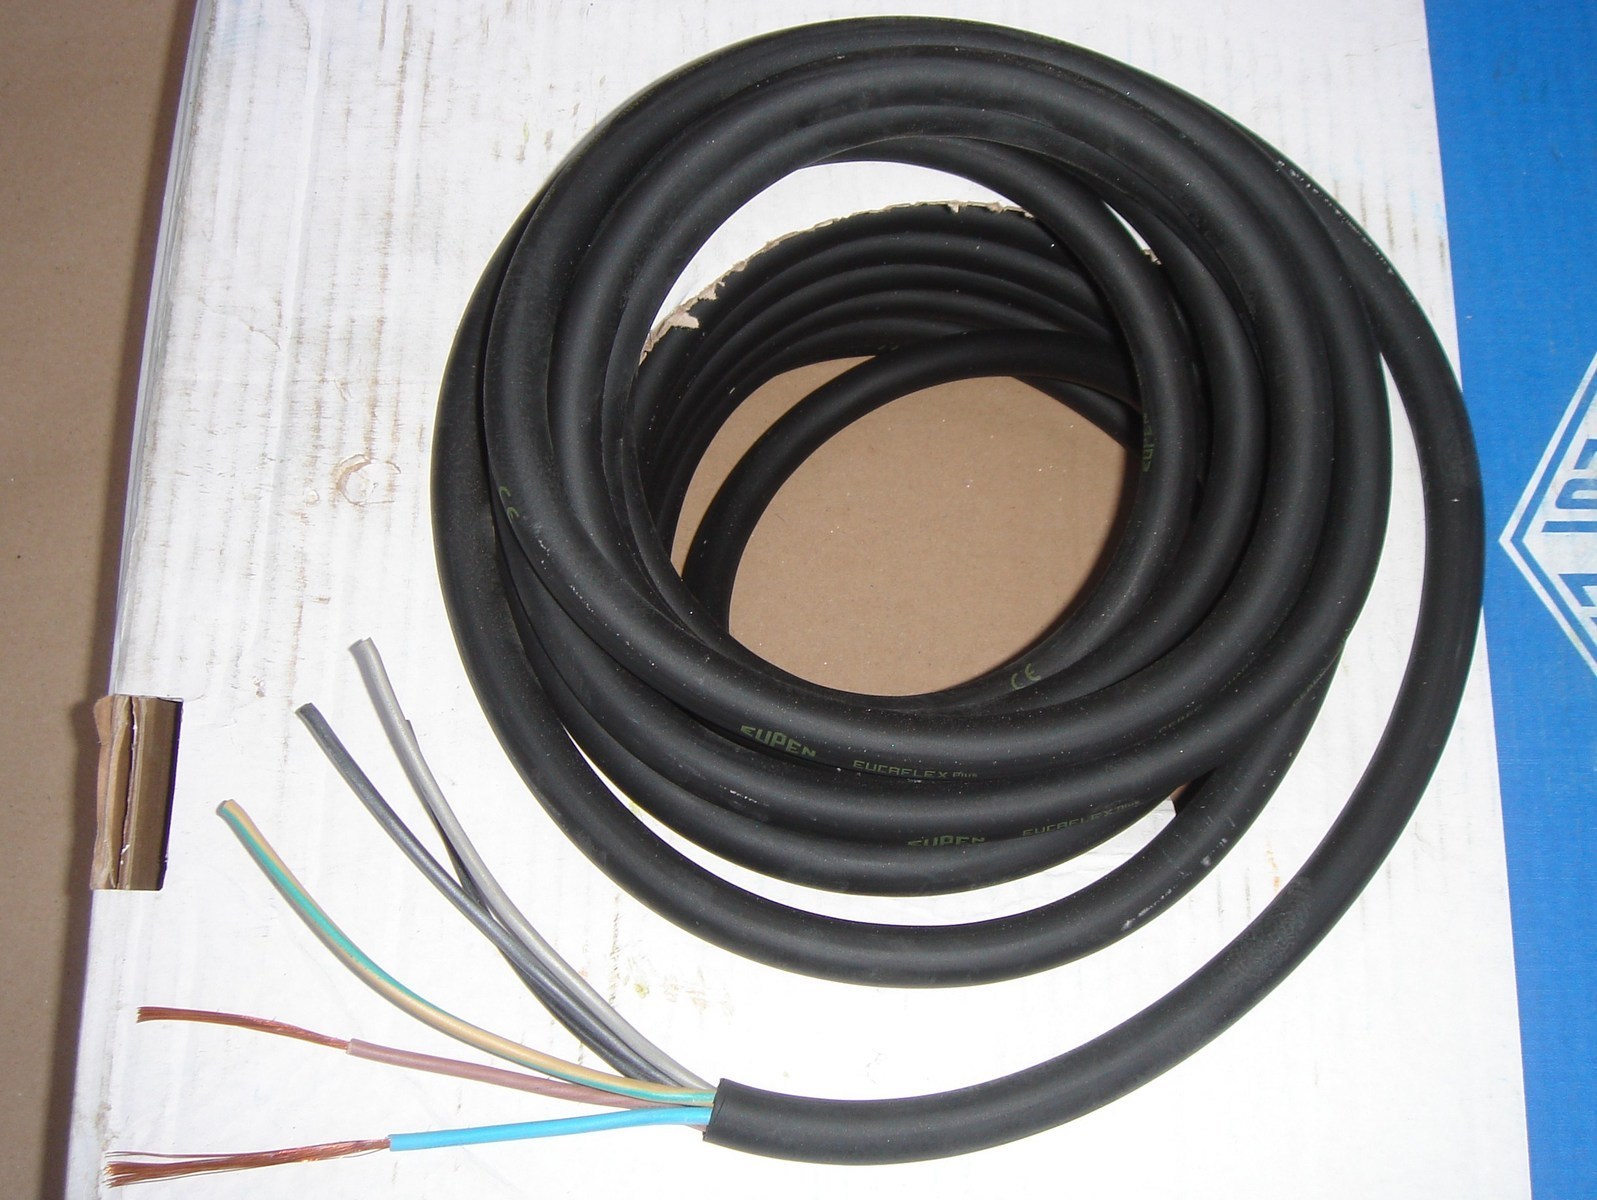 Купить кабель квт. Кабель h07rn-f 5g4 1х50 артикул 16001303. 314n162150 прорезиненный силовой кабель, 5m. Кабель кг 5x6. 110cy4g6 кабель силовой.